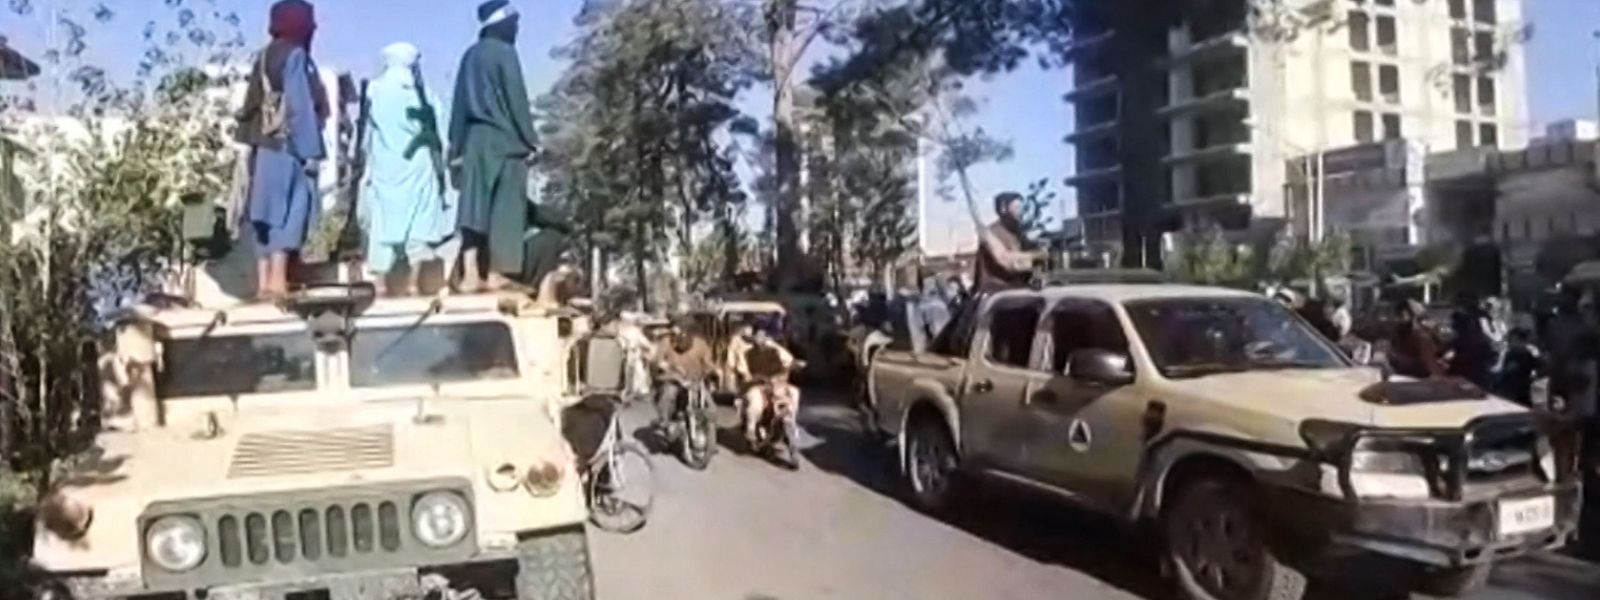 Dieses Videobild zeigt die Taliban-Kämpfer am Donnerstag in Herat .